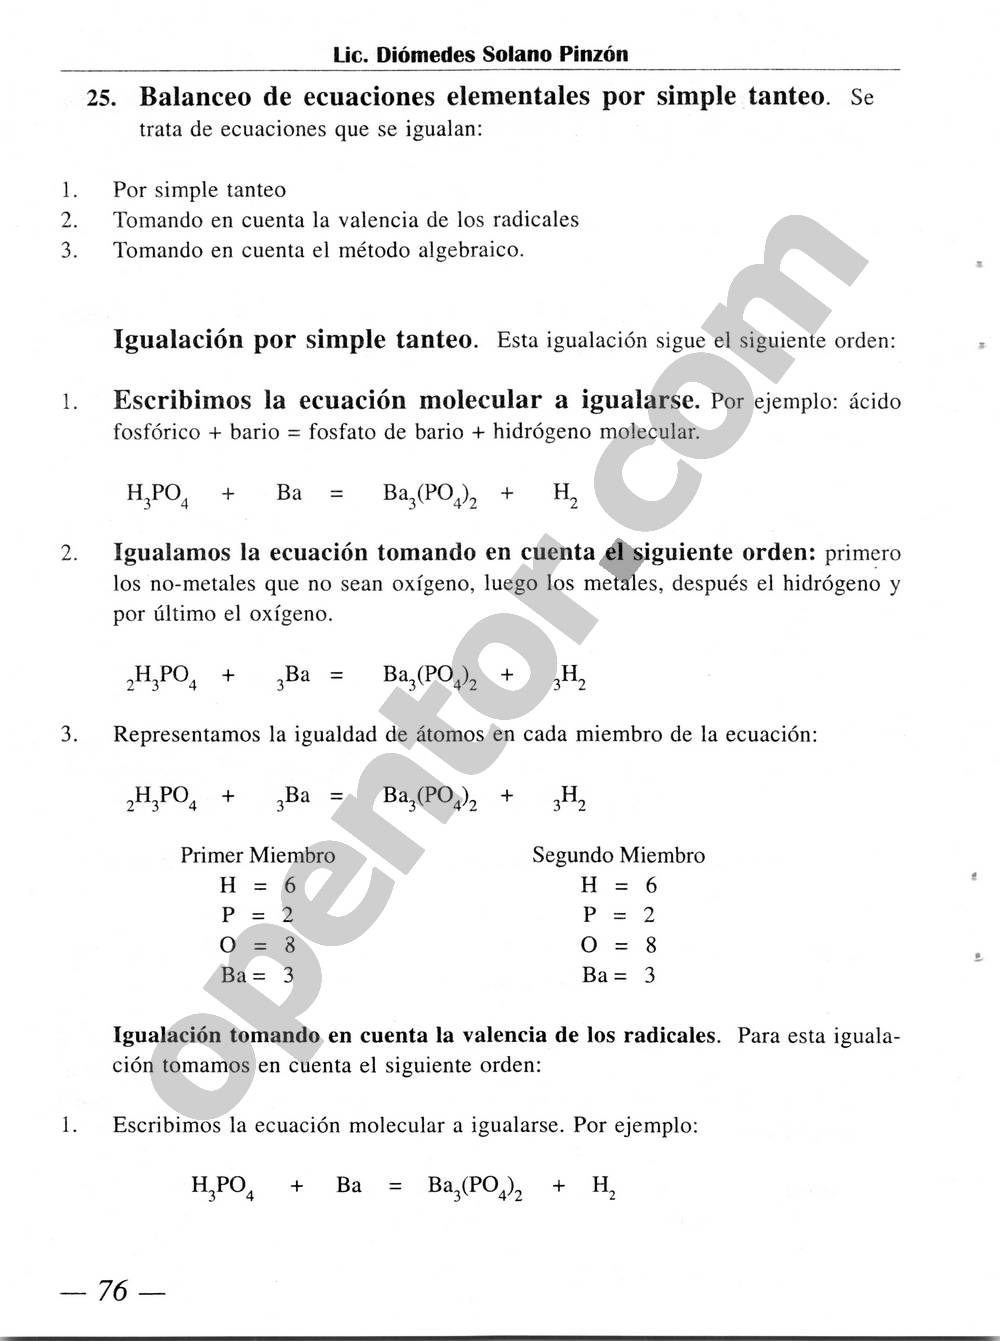 Química Simplificada de Diómedes Solano - Página 76